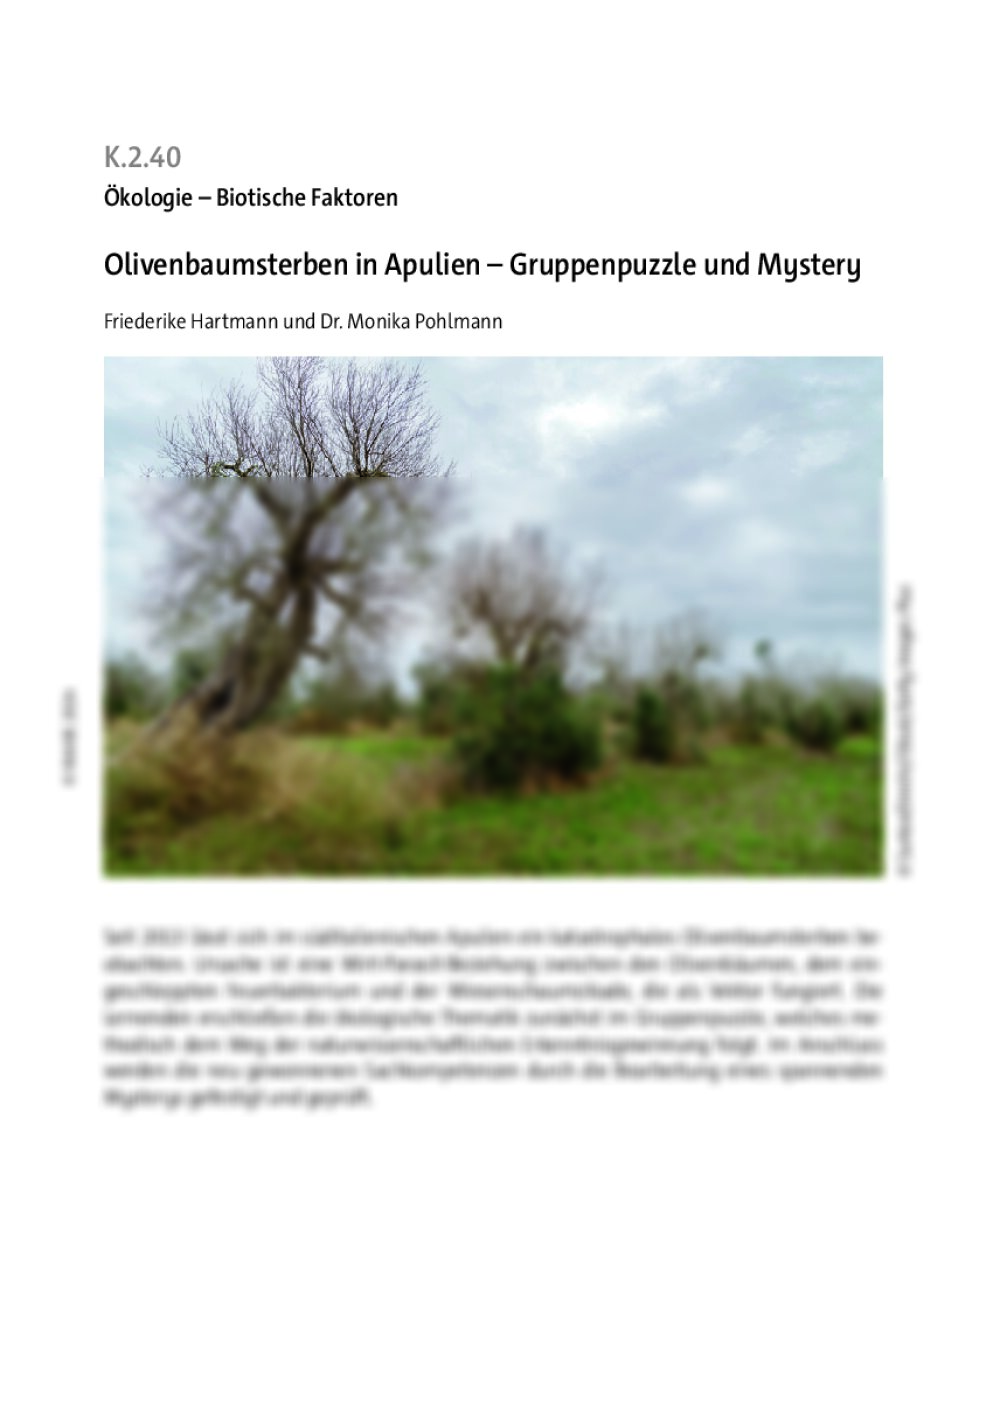 Olivenbaumsterben in Apulien  - Seite 1